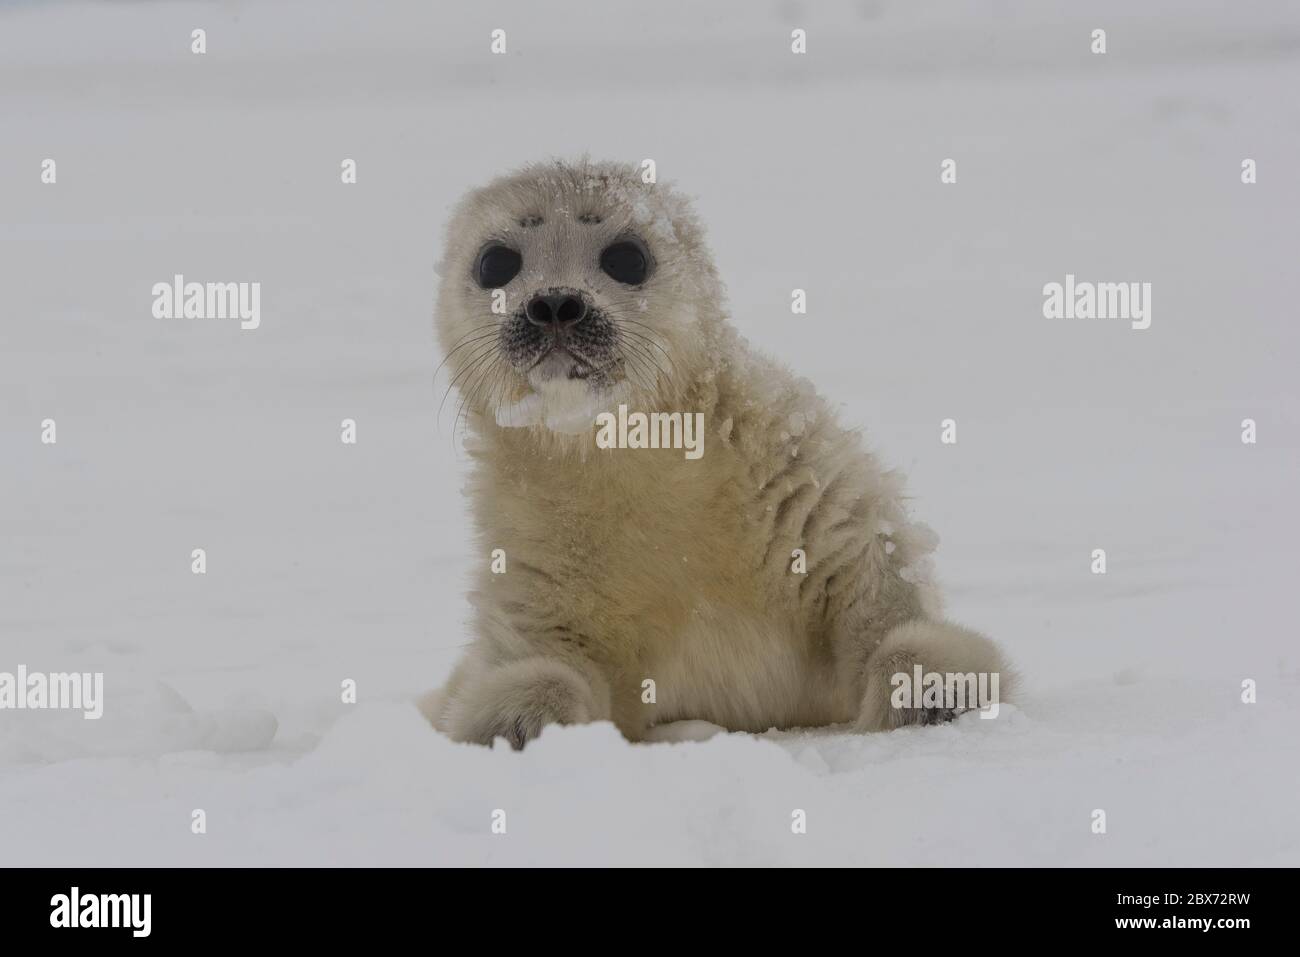 Eine kleine Robbe an dem Eisloch, ihrer Geburtsstelle. Das Tier ist ohne Scheu und sieht neugierig nach dem Fotografen und dem Hundeschlitten in der N Stock Photo